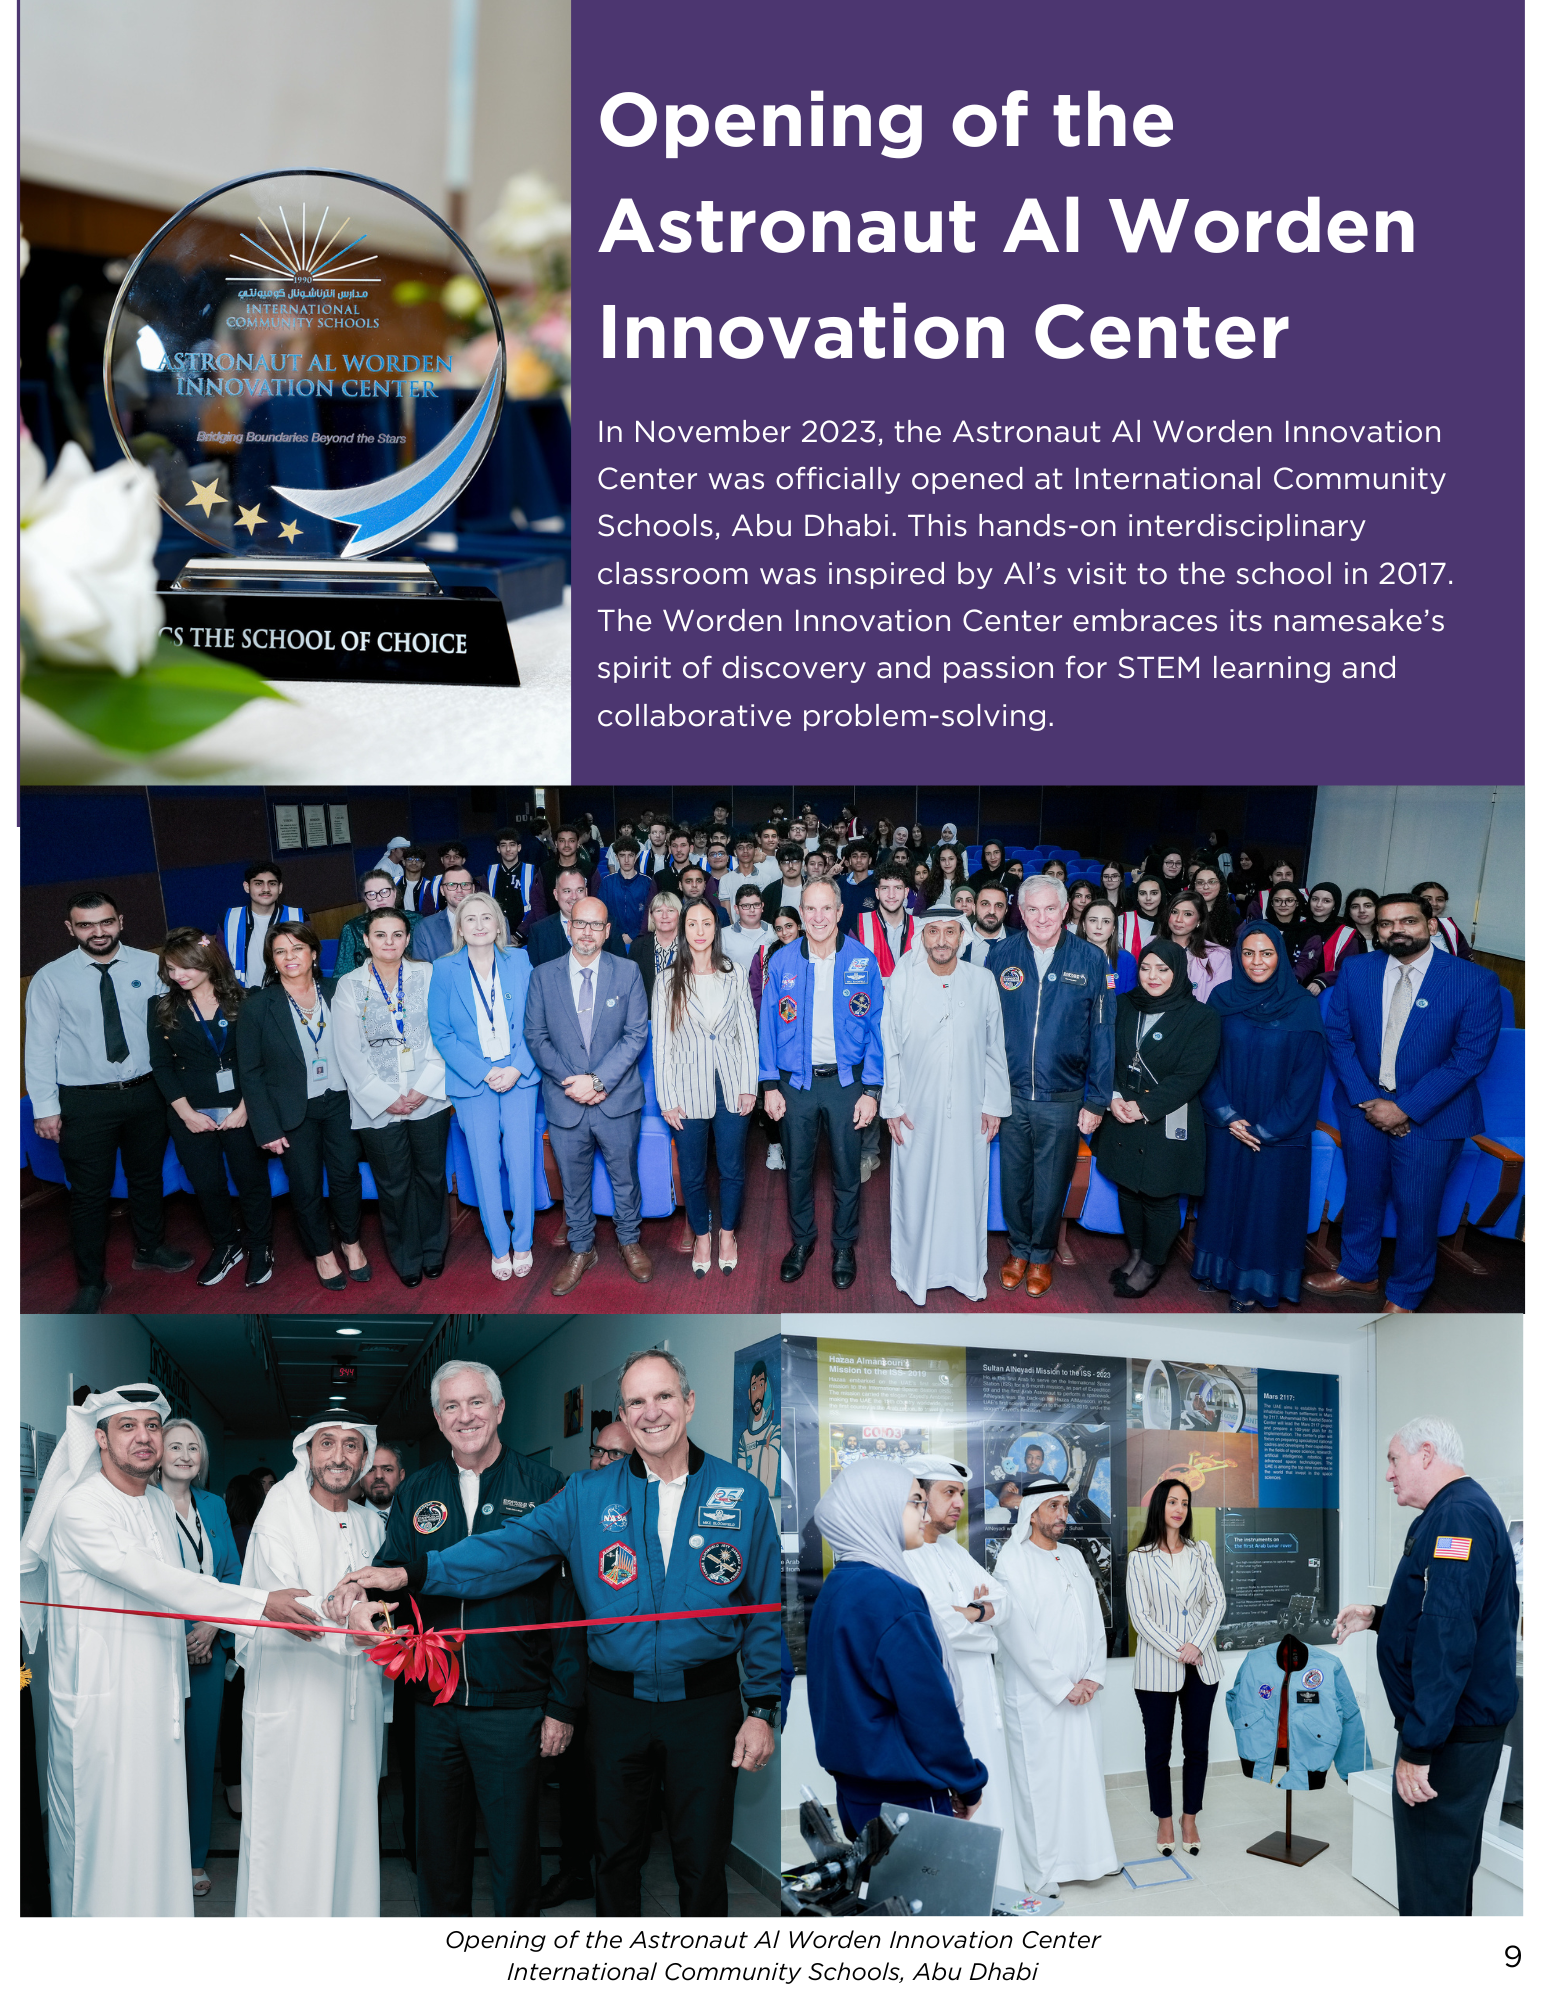 Al Worden Innovation Center